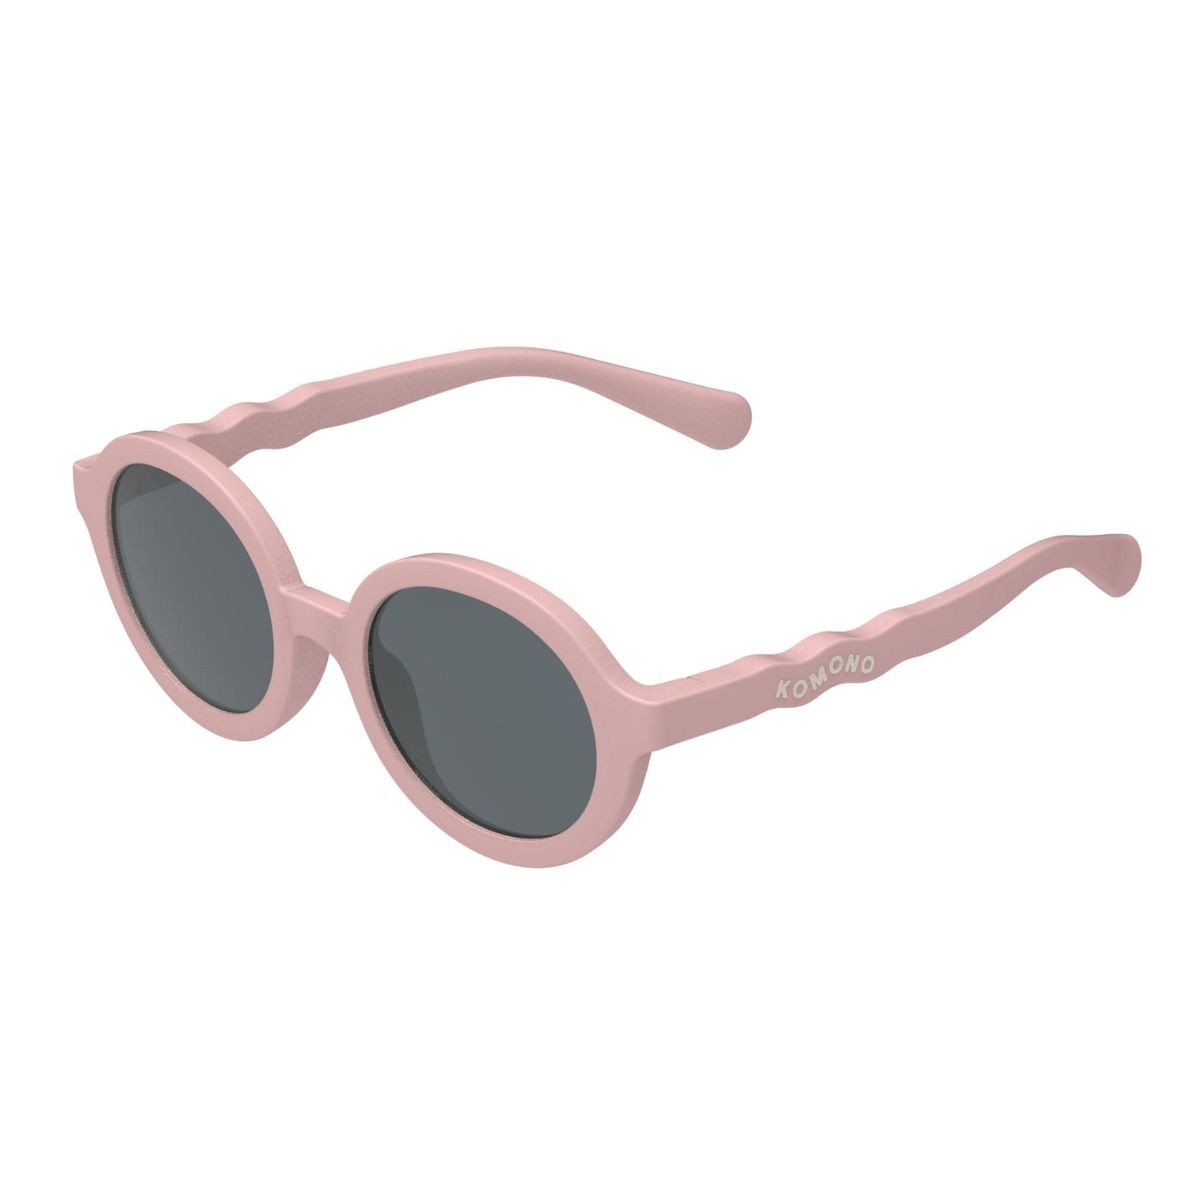 Bebe Sunglasses Blush 0-1y - Komono